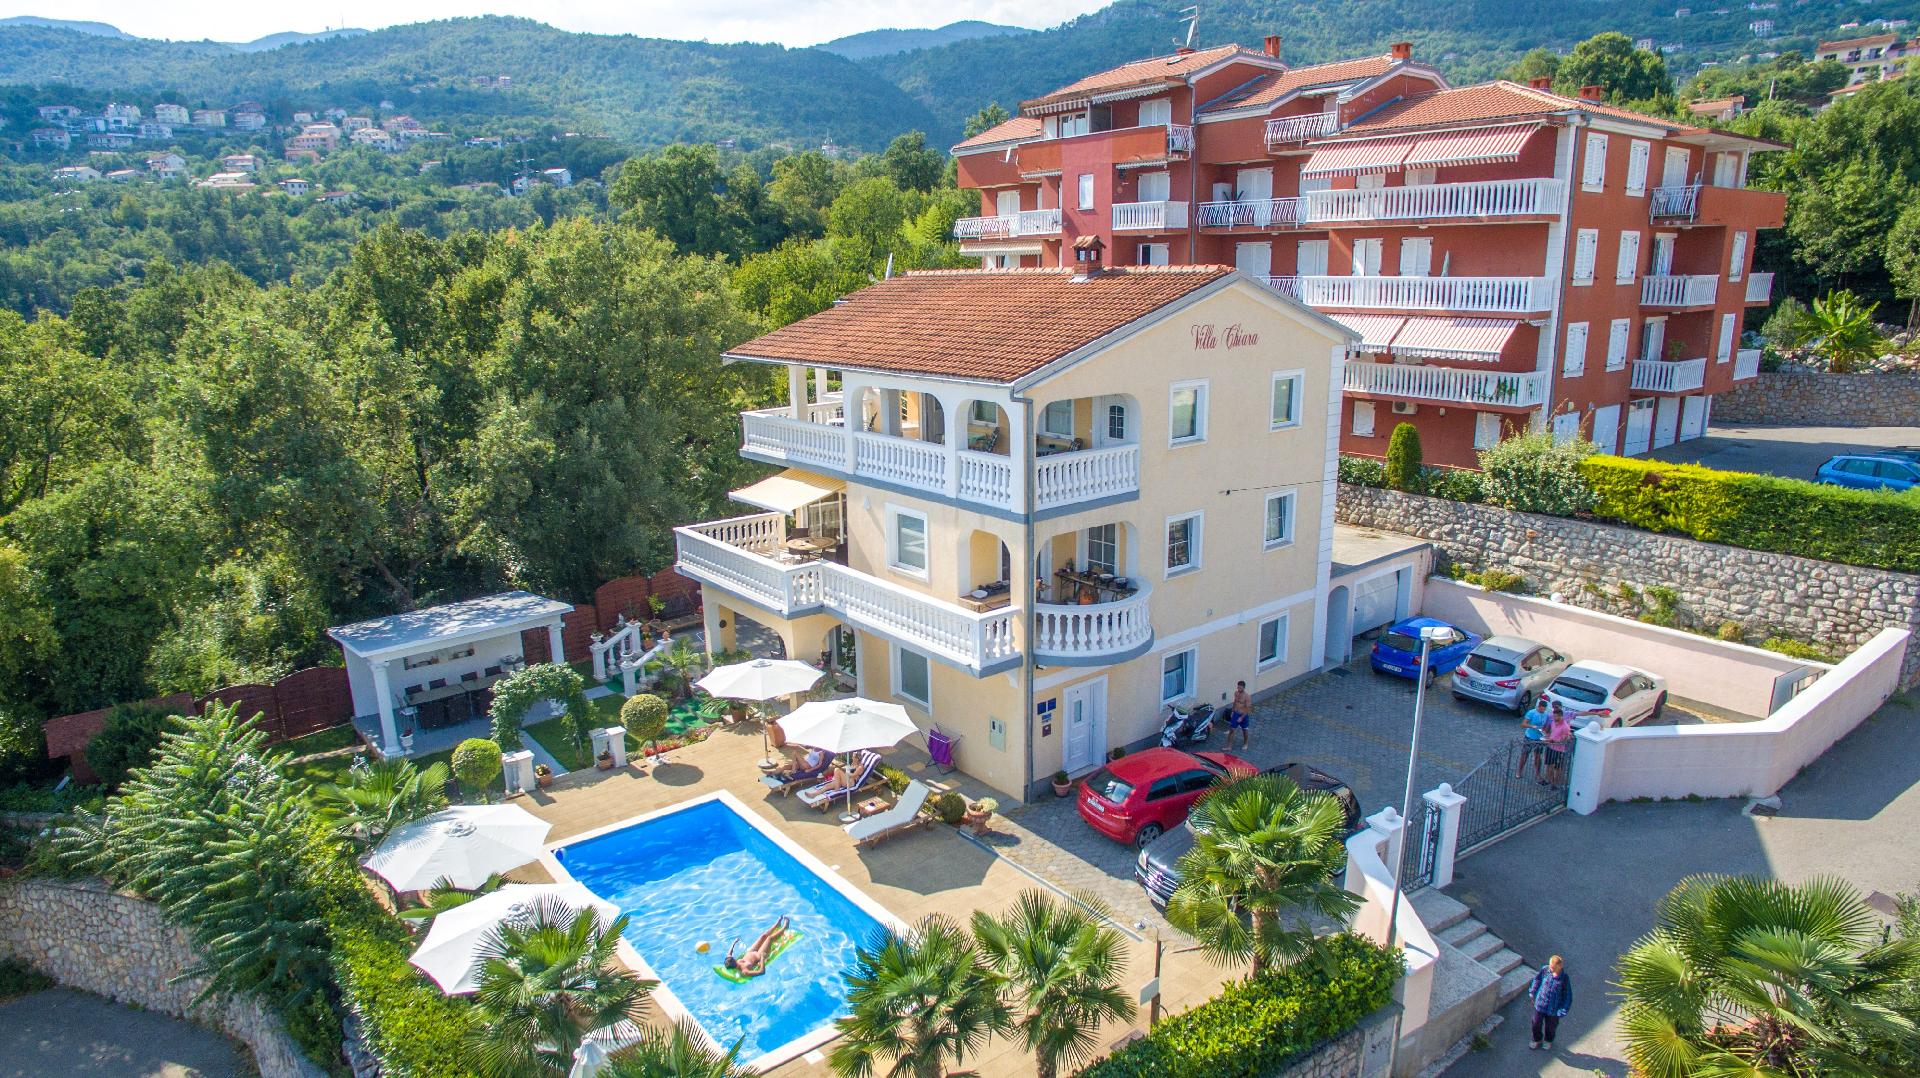 Ferienwohnung für 2 Personen  + 1 Kind ca. 30 Ferienhaus in Kroatien